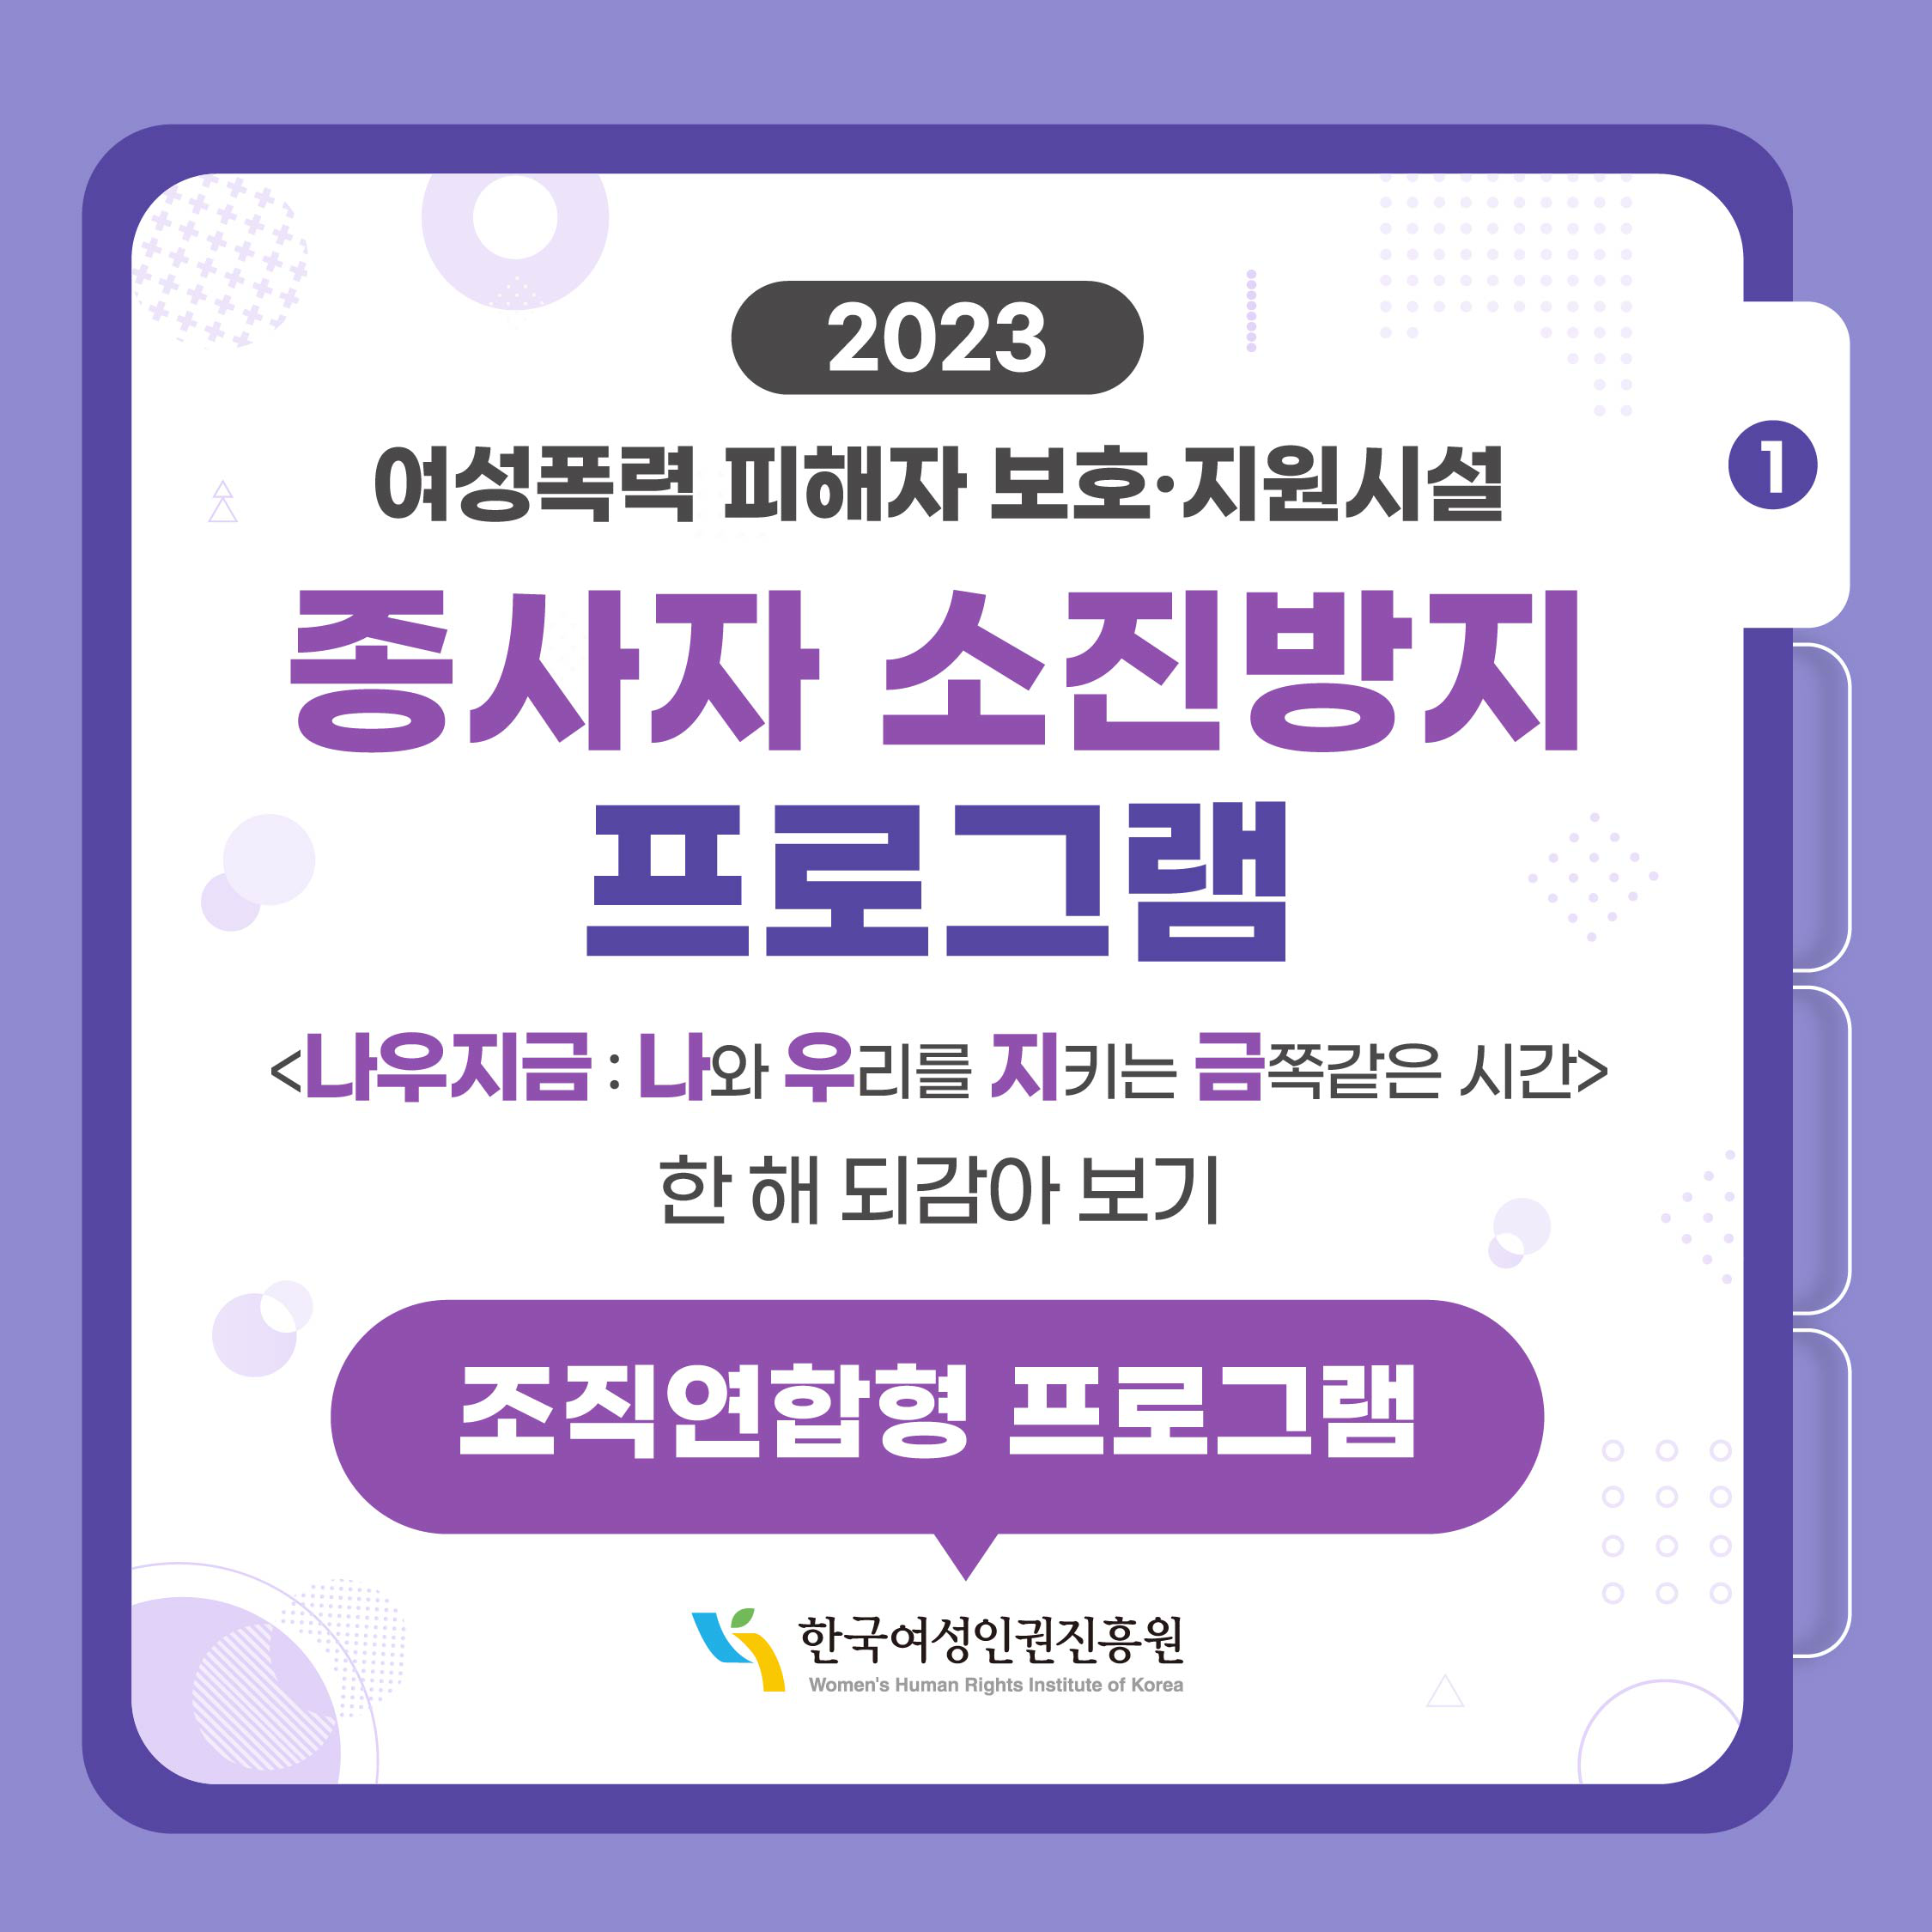 2023 여성폭력 피해자 보호·지원시설 종사자 소진방지 프로그램 나우지금: 나와 우리를 지키는 금쪽같은 시간 한 해 되감아 보기 조직연합형 프로그램 한국여성인권진흥원 WOMEN'S HUMAN RIGHTS INSTITUTE OF KOREA